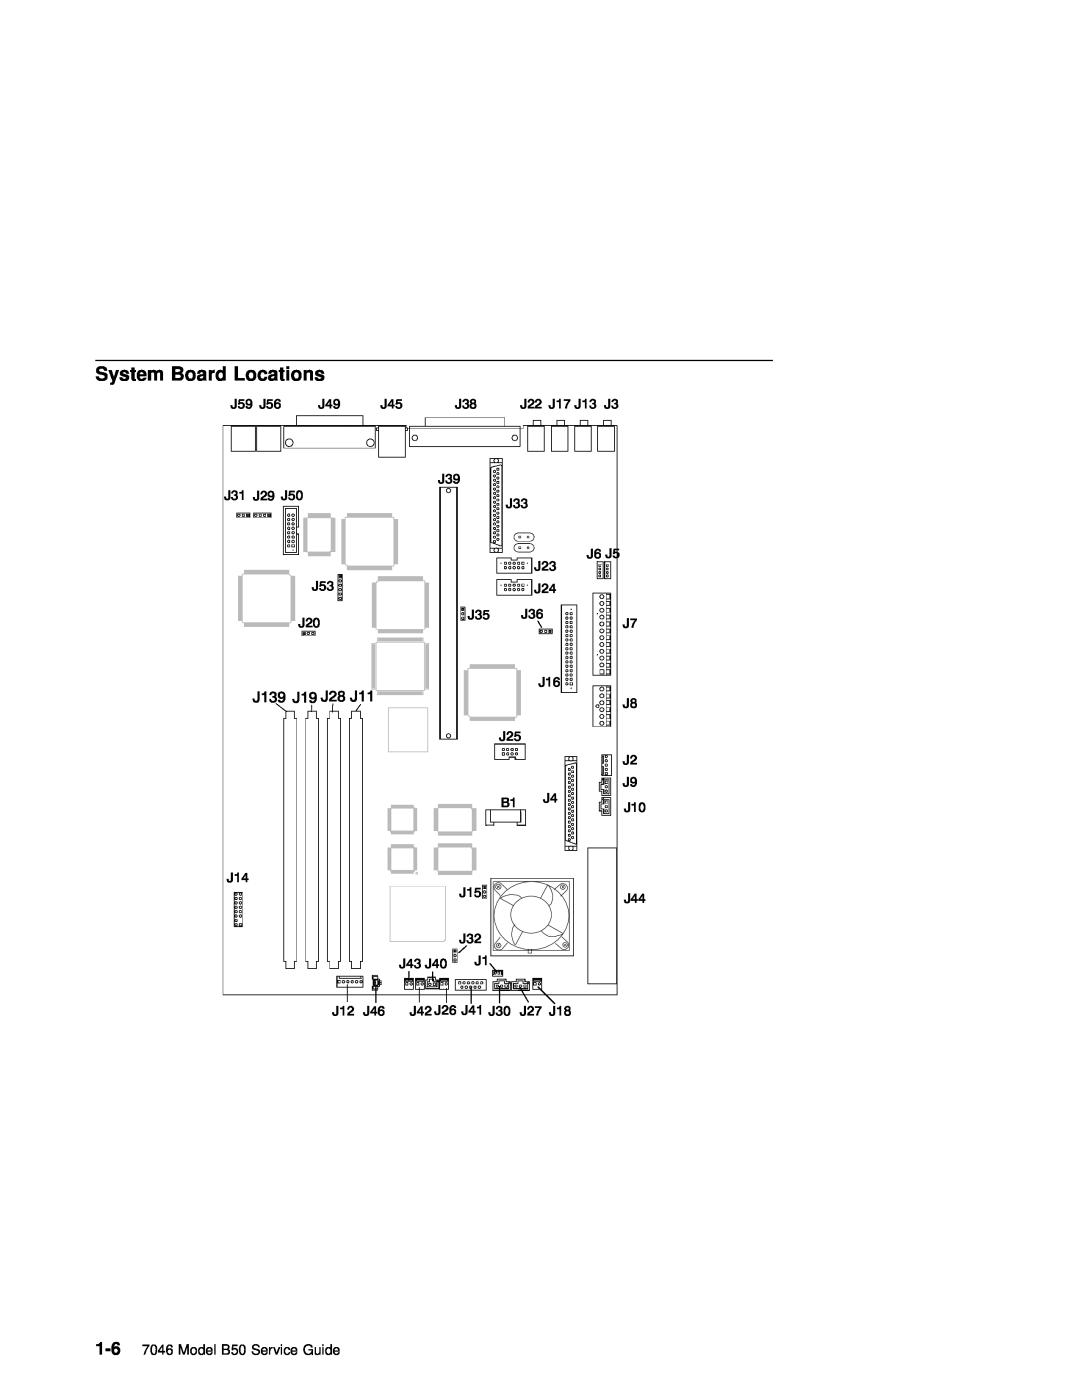 IBM B50 manual System Board Locations, J139 J19 J28 J11 